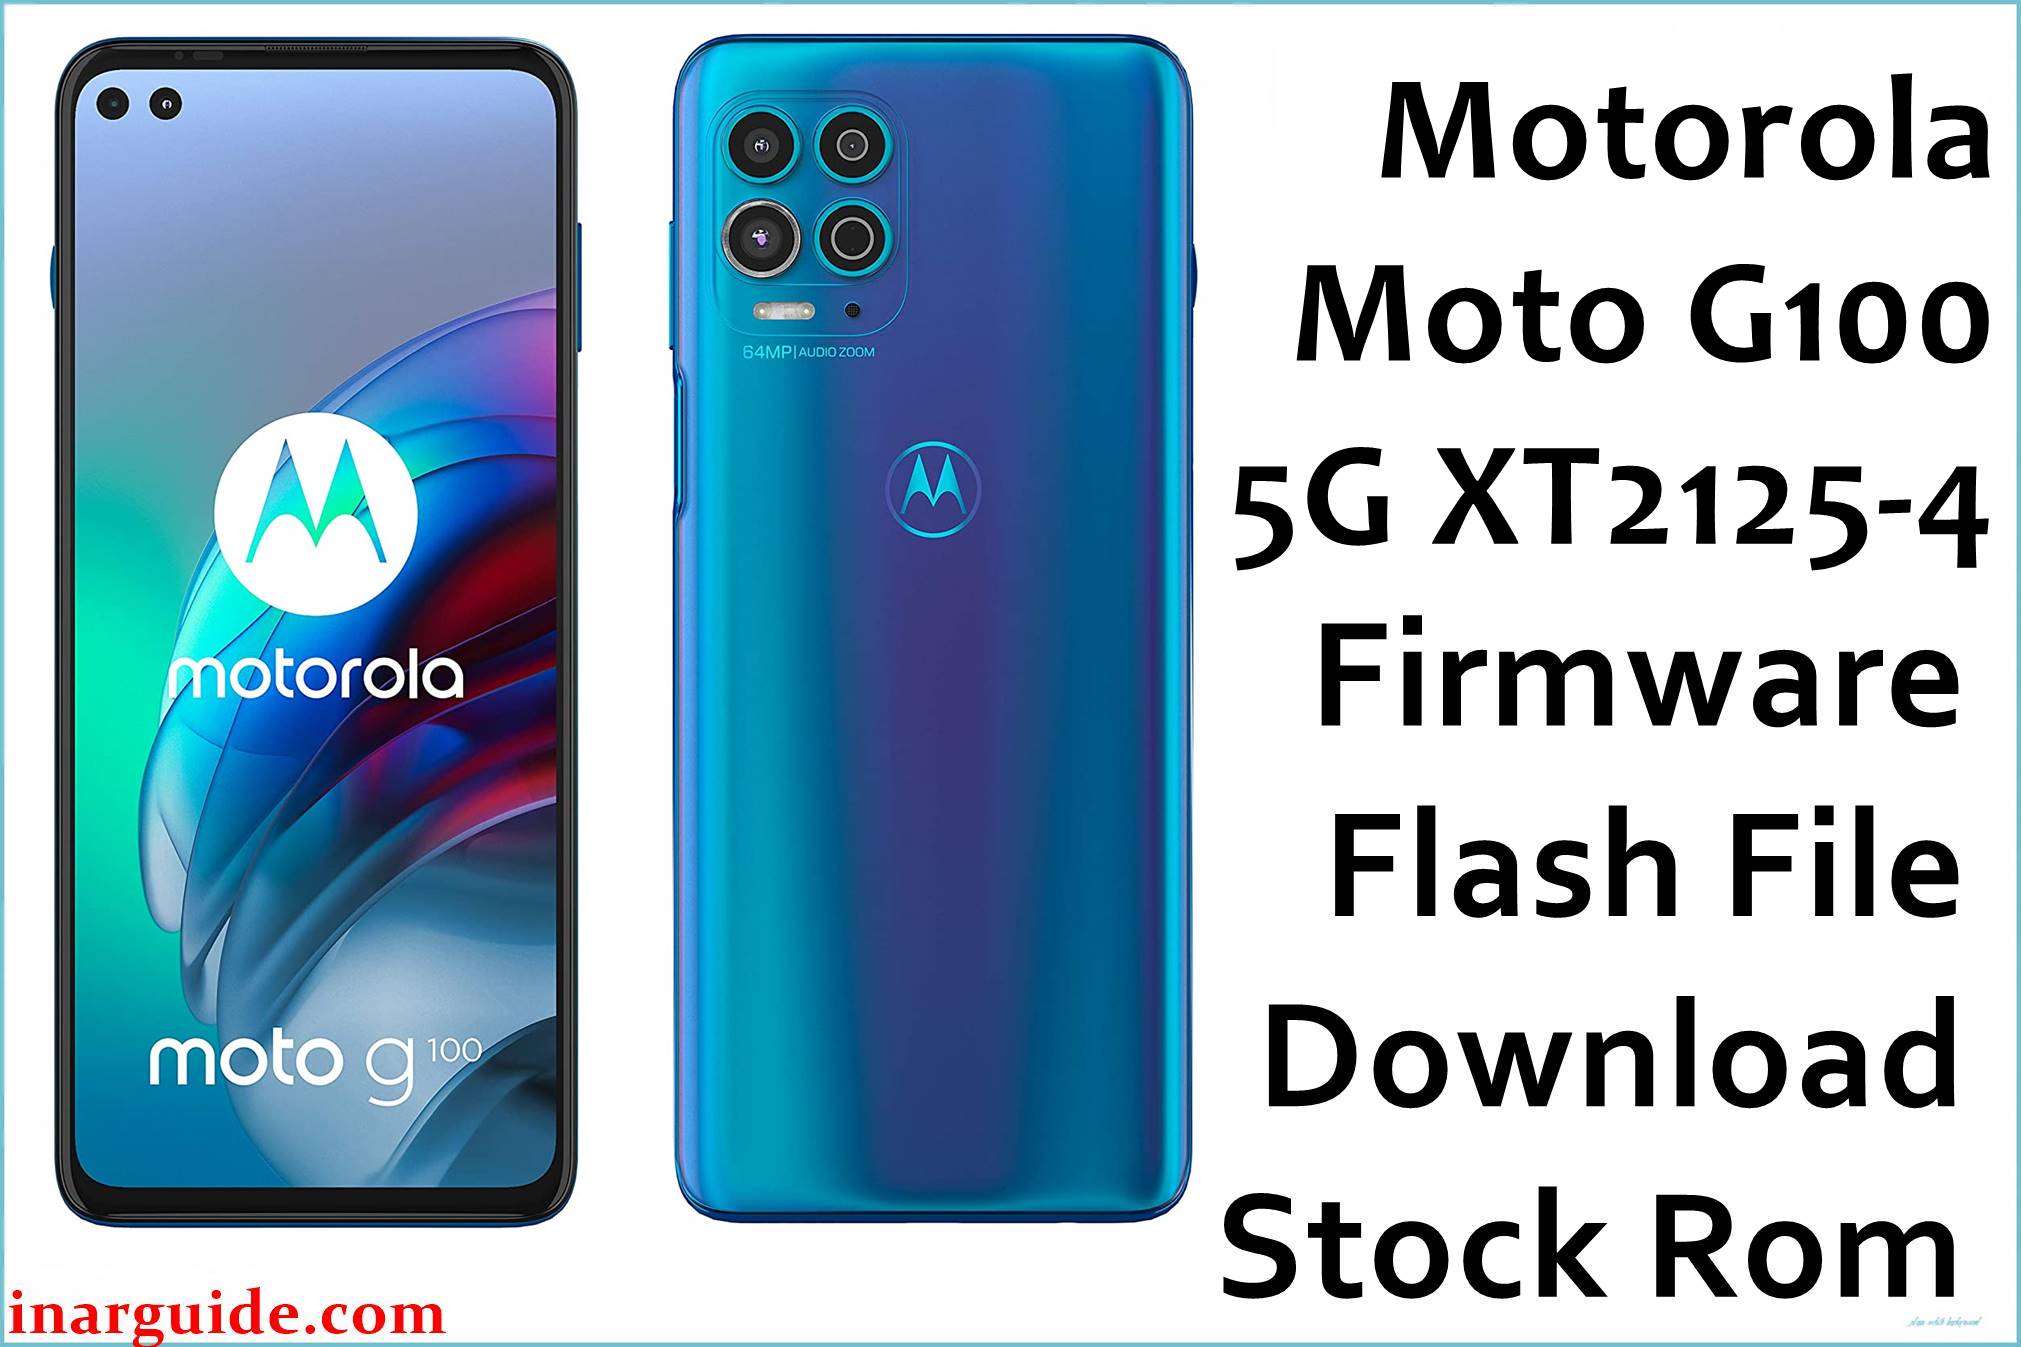 Motorola Moto G100 5G XT2125-4